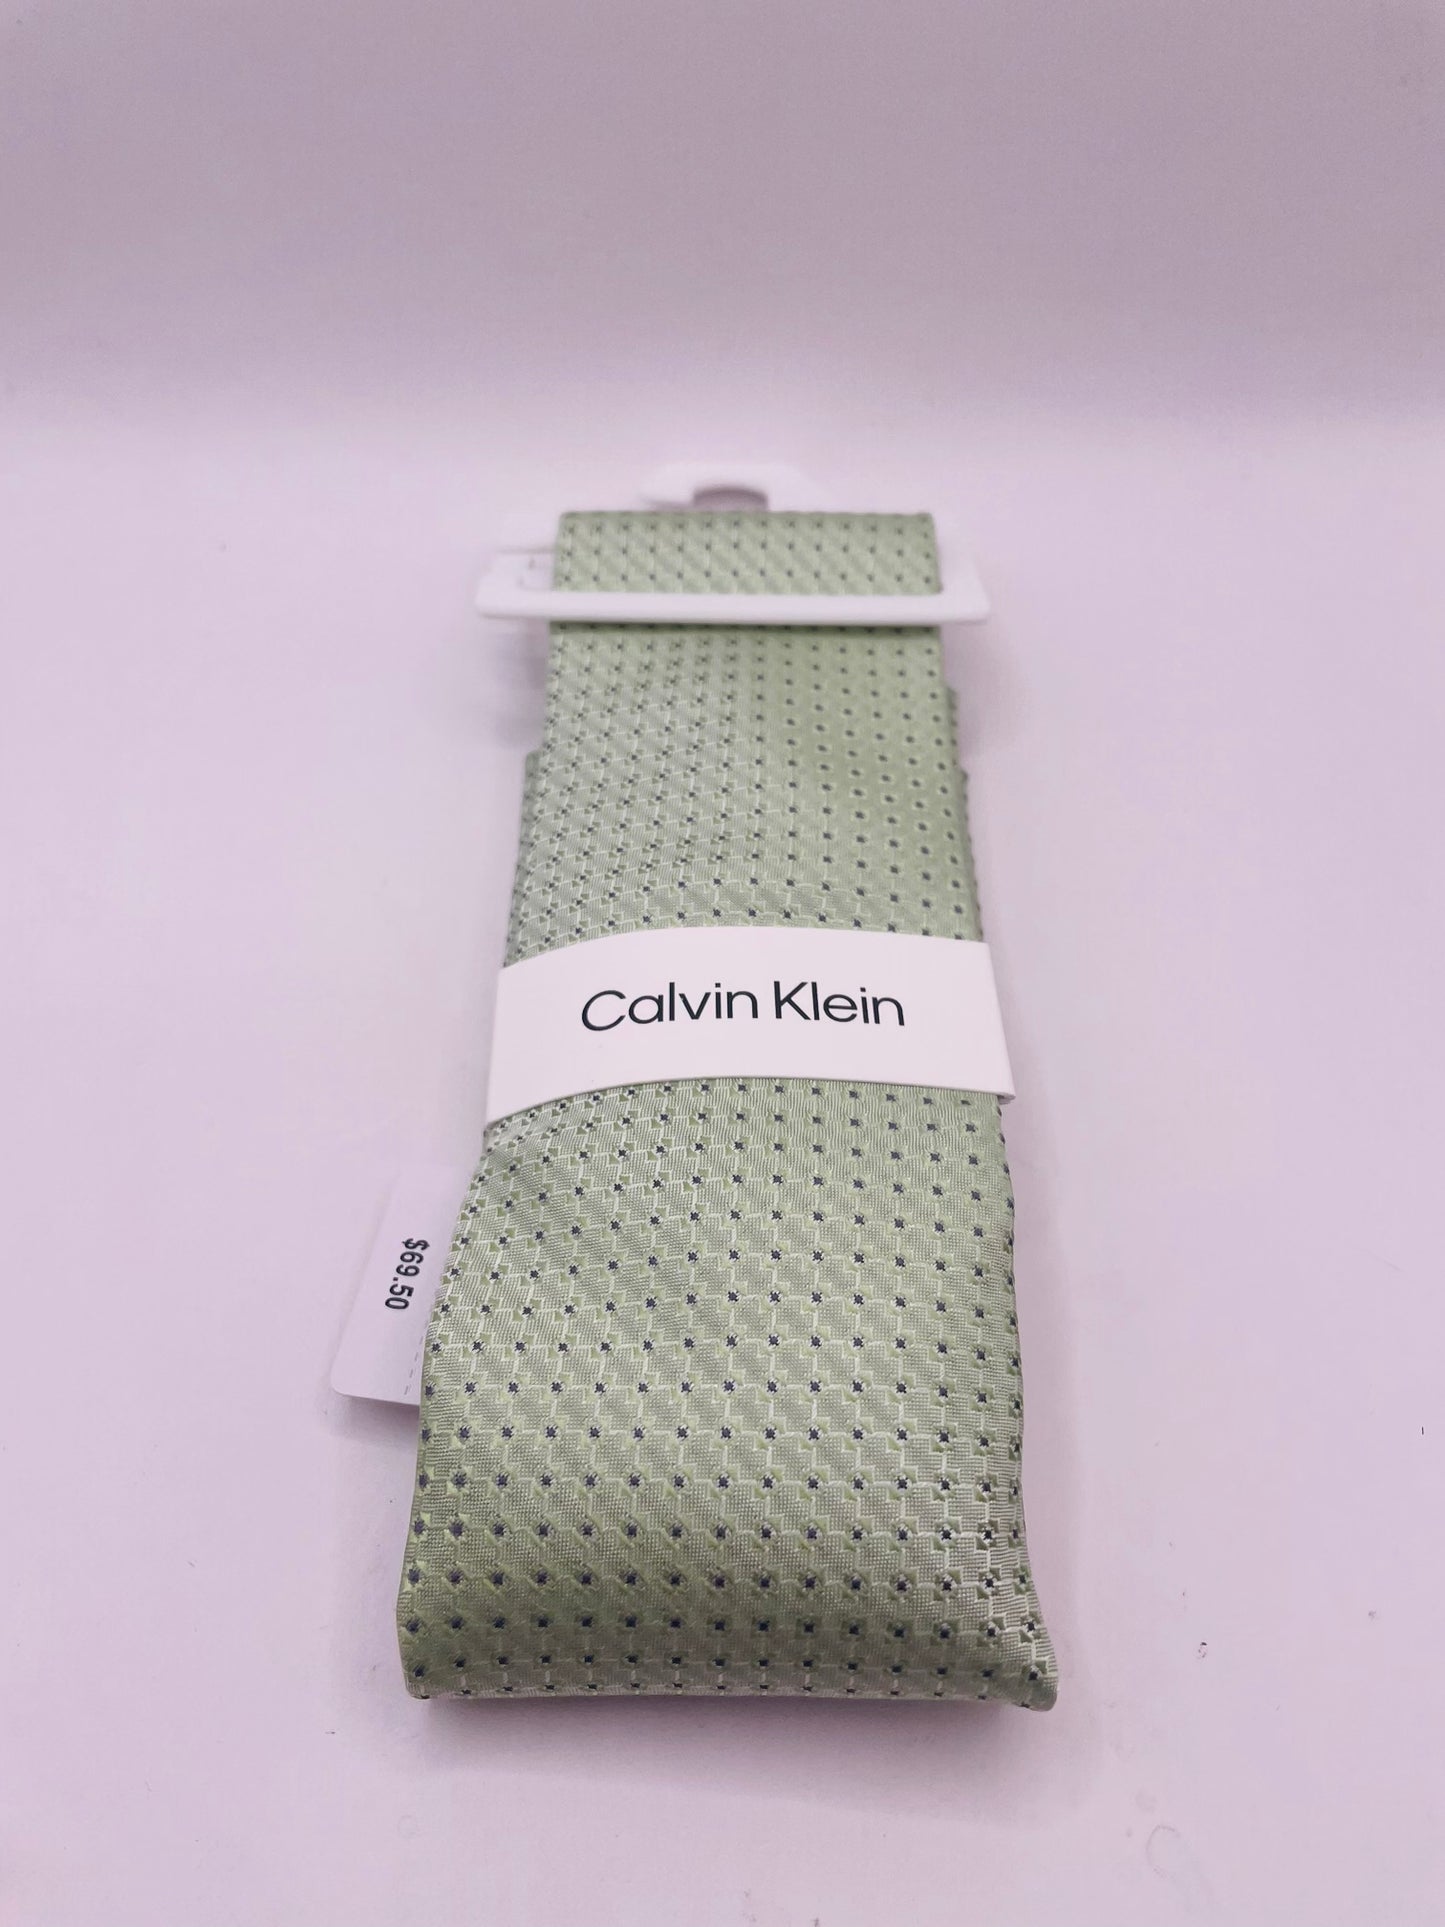 Calvin Klein tie